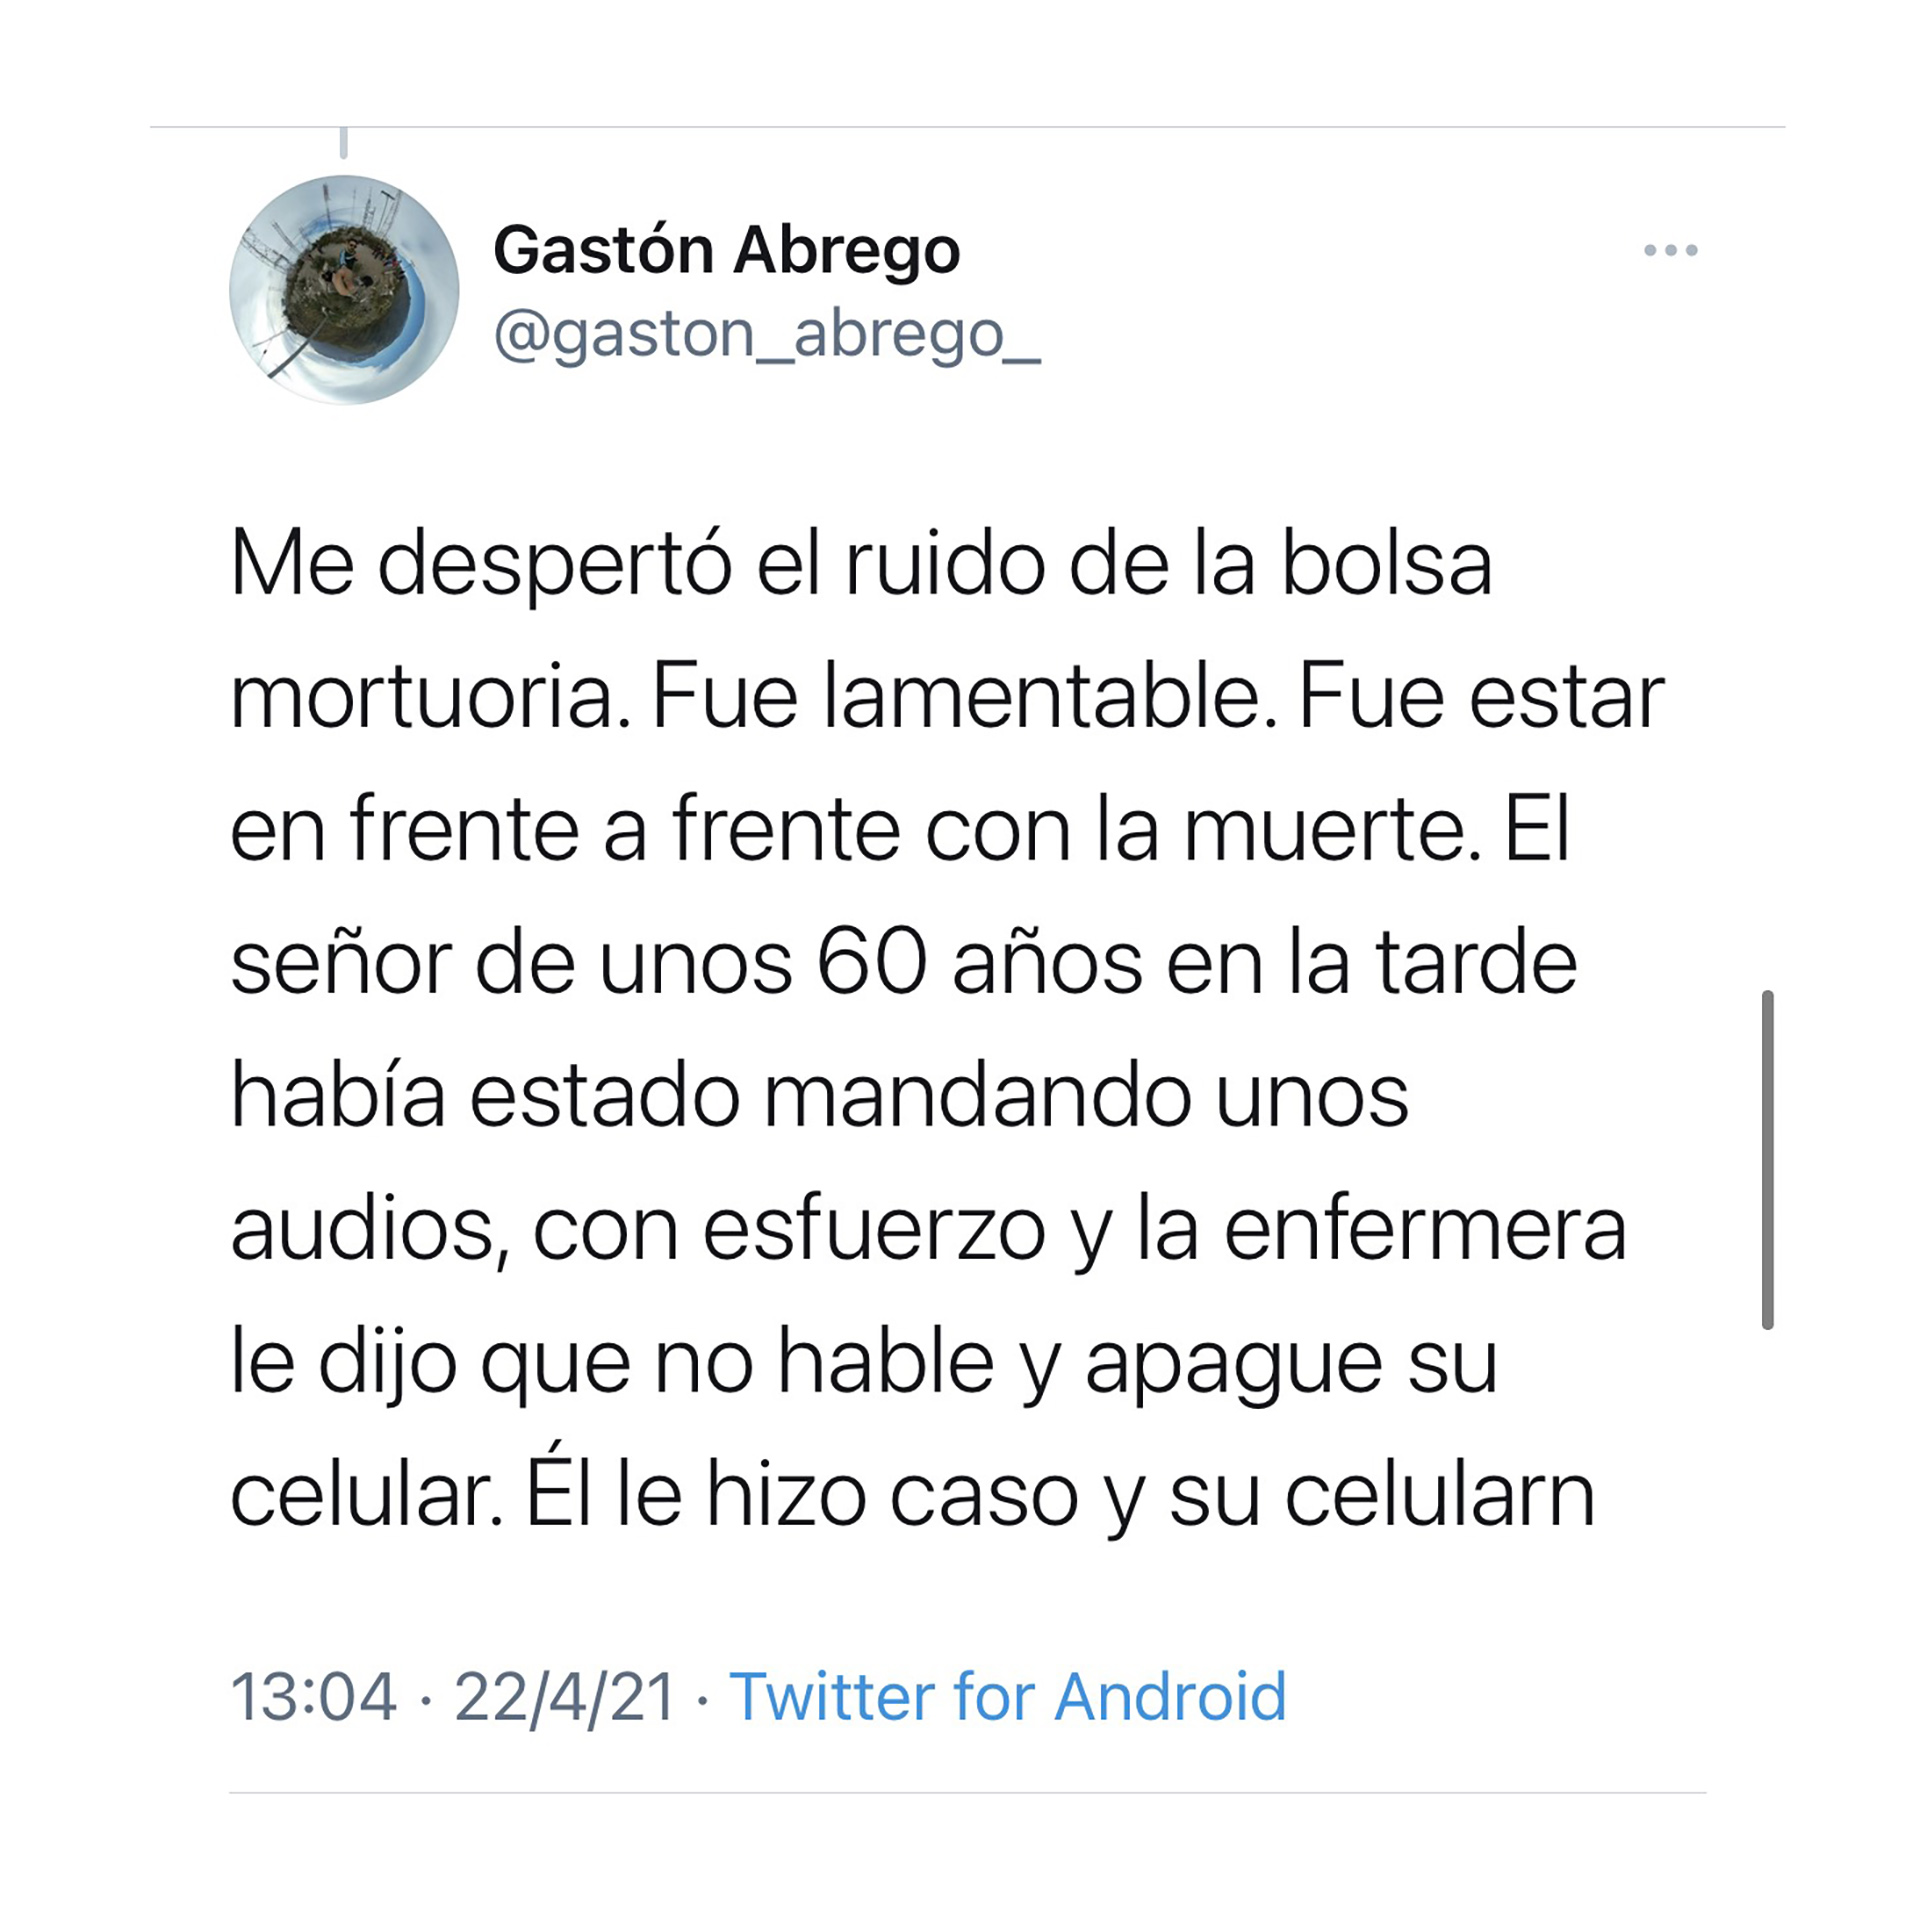 El terrible relato de Gastón en Twitter